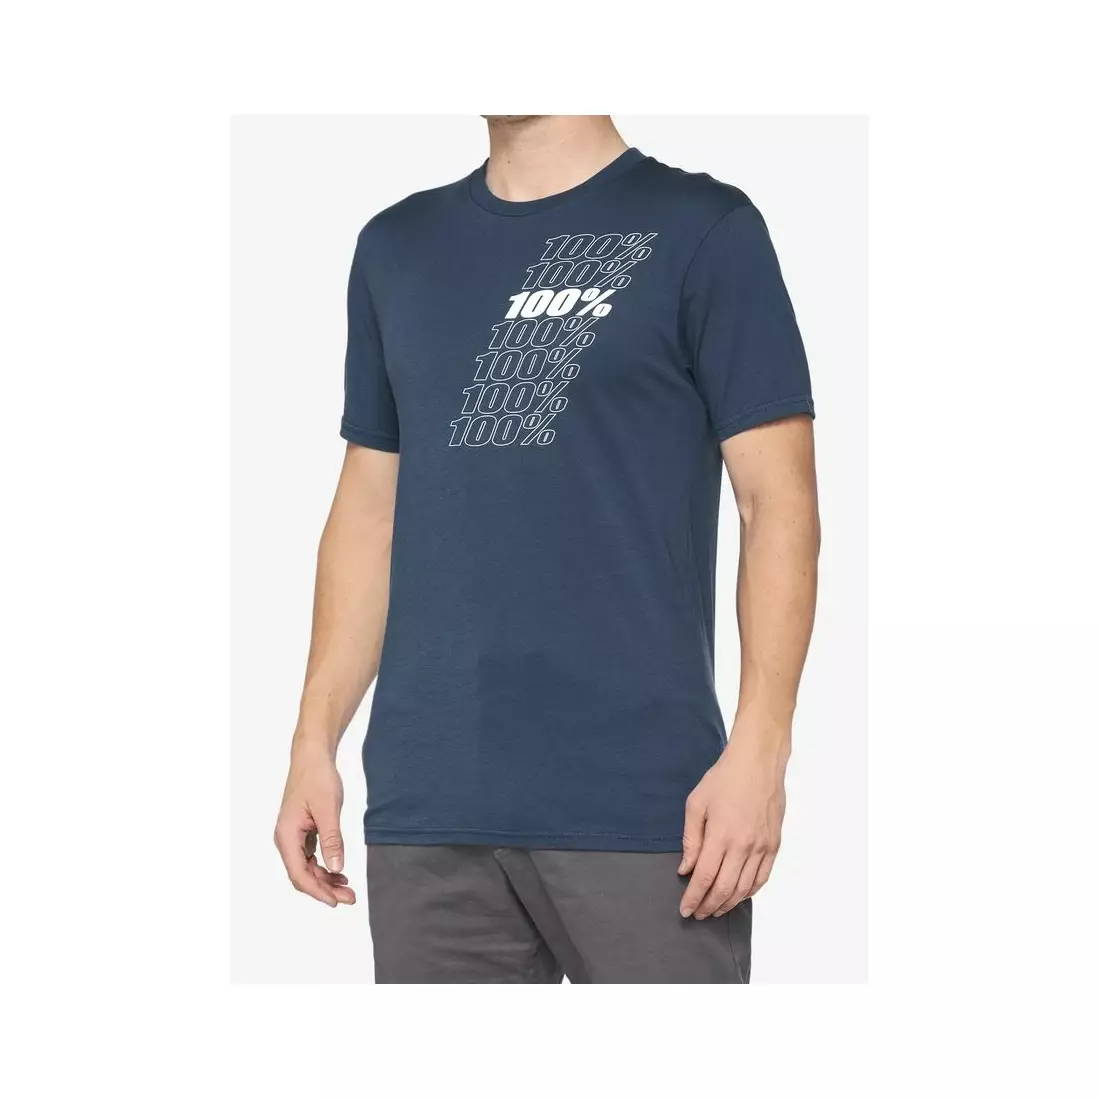 100% pánske športové tričko s krátkym rukávom NORD slate blue STO-32124-182-13